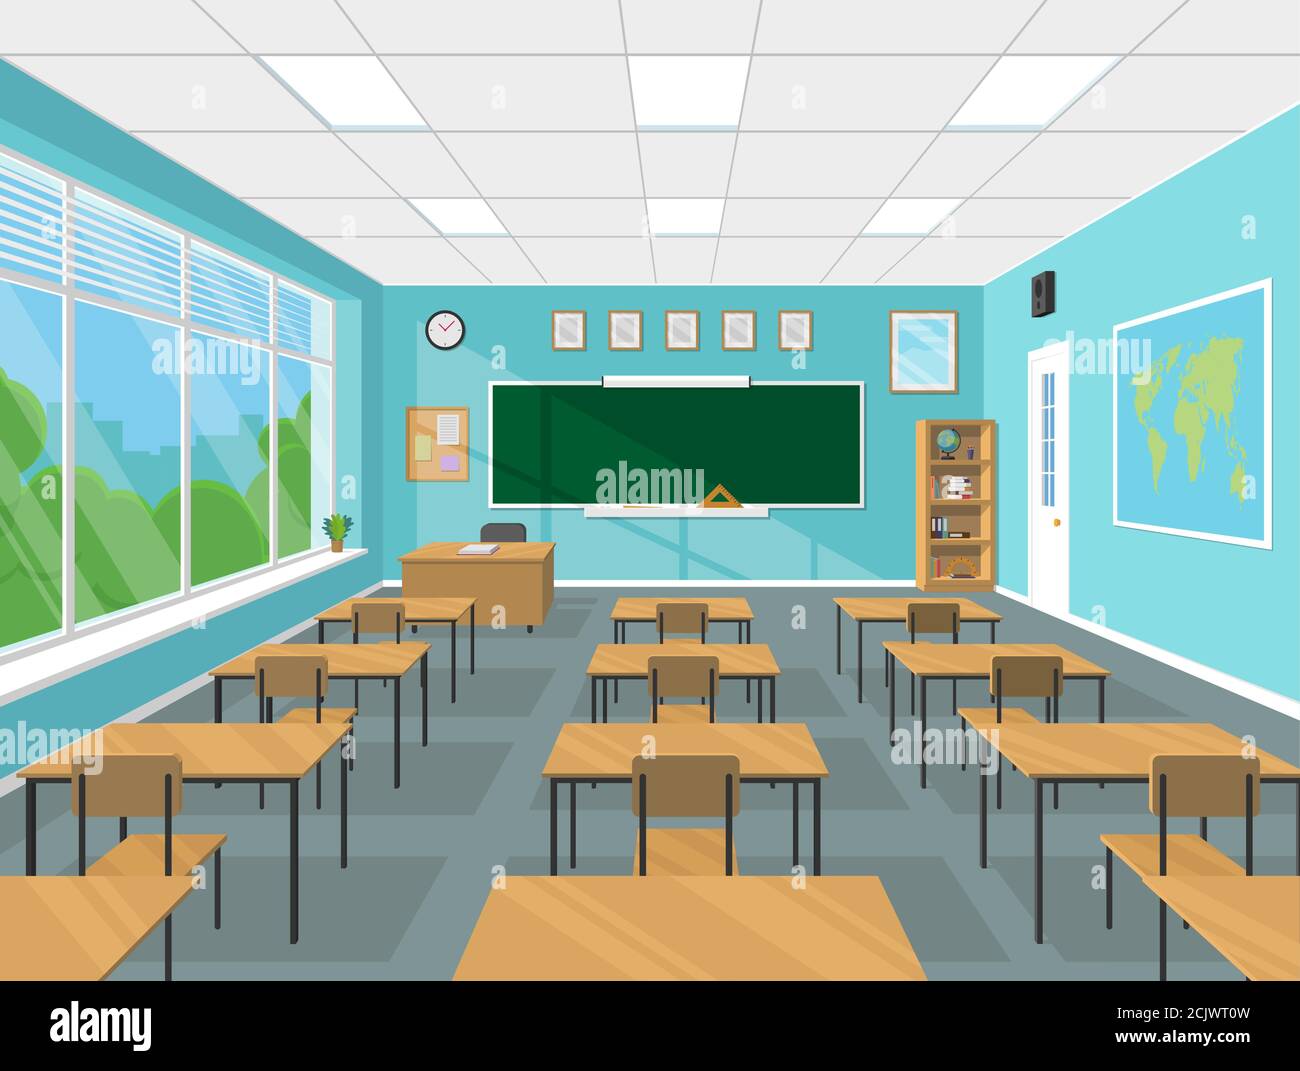 Salle de classe intérieur d'une école ou d'un collège avec tableau noir, table d'enseignant, bureaux, fournitures scolaires. Illustration vectorielle plate Illustration de Vecteur